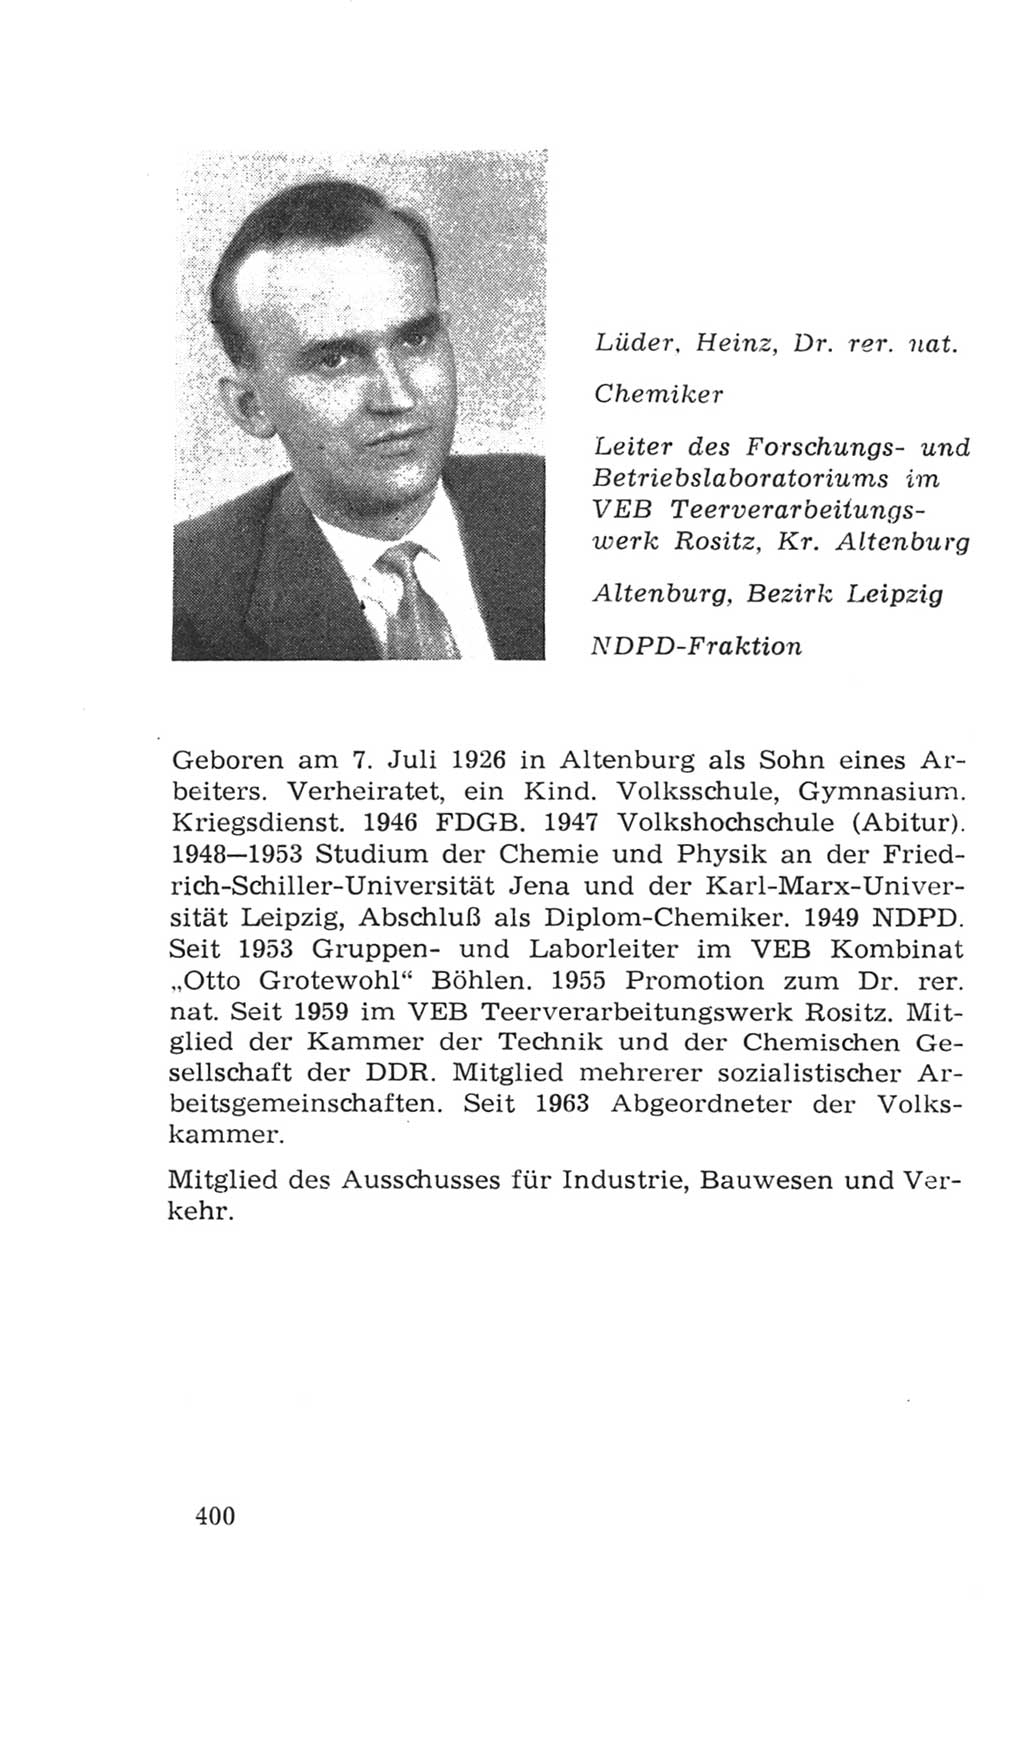 Volkskammer (VK) der Deutschen Demokratischen Republik (DDR), 4. Wahlperiode 1963-1967, Seite 400 (VK. DDR 4. WP. 1963-1967, S. 400)